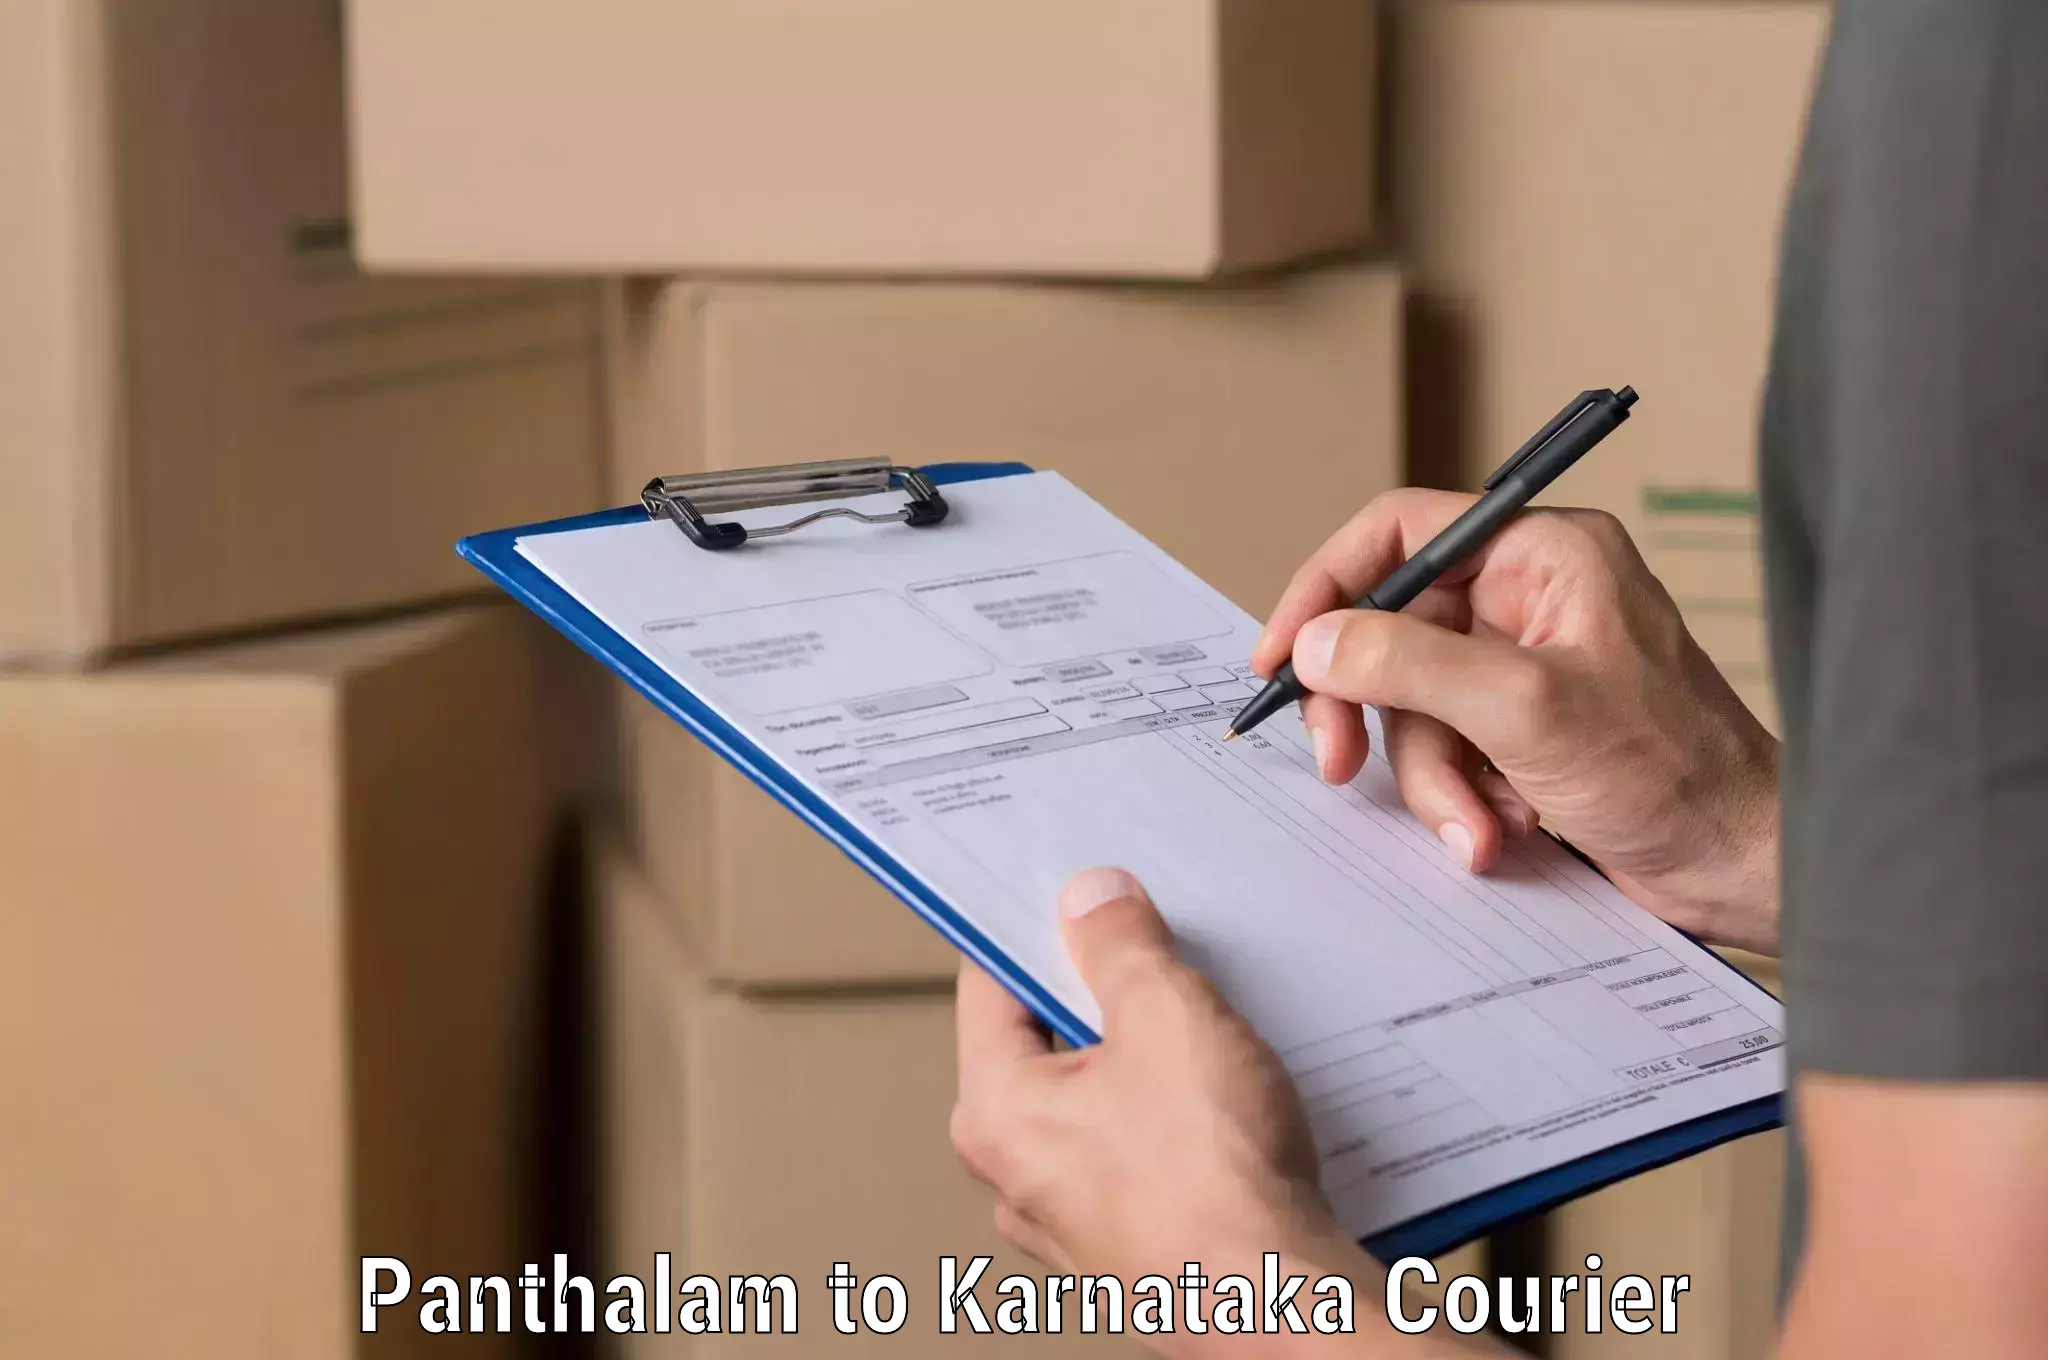 Advanced shipping technology Panthalam to Mangalore Port